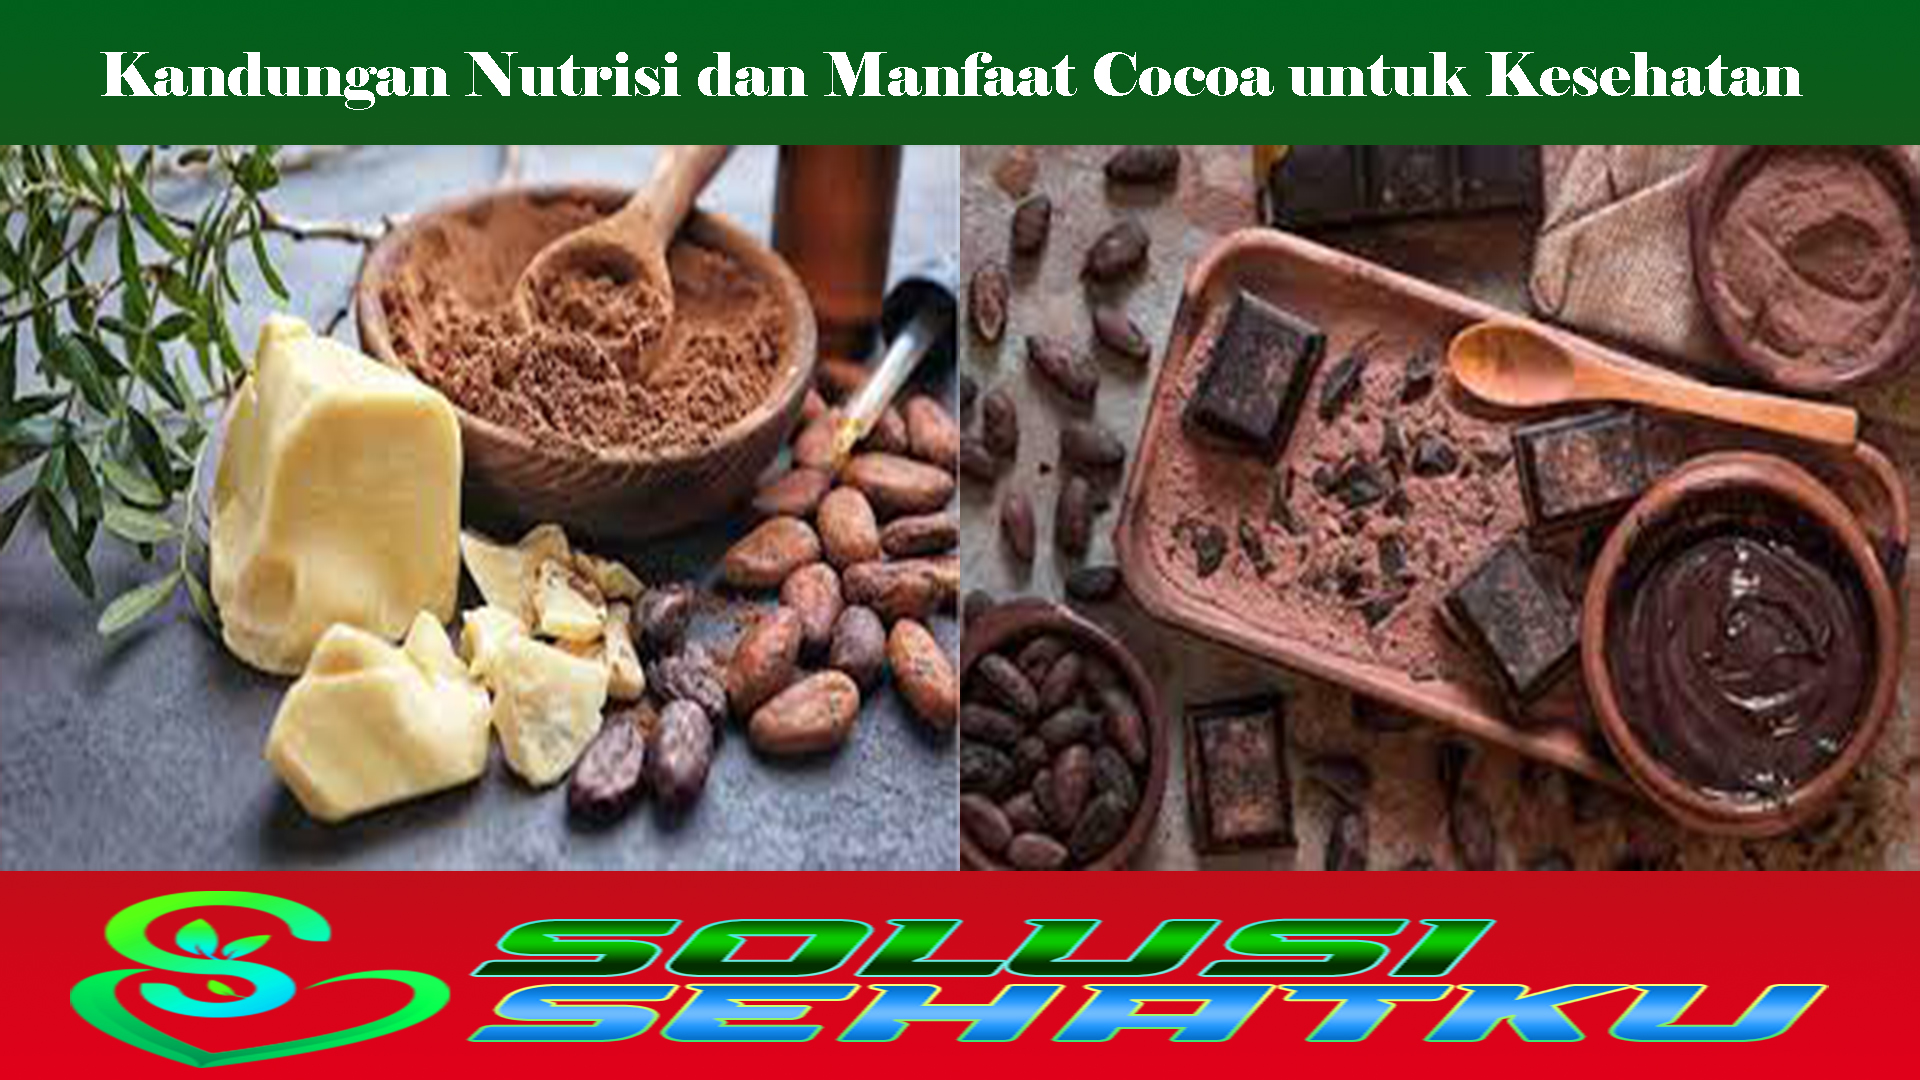 Kandungan Nutrisi dan Manfaat Cocoa untuk Kesehatan